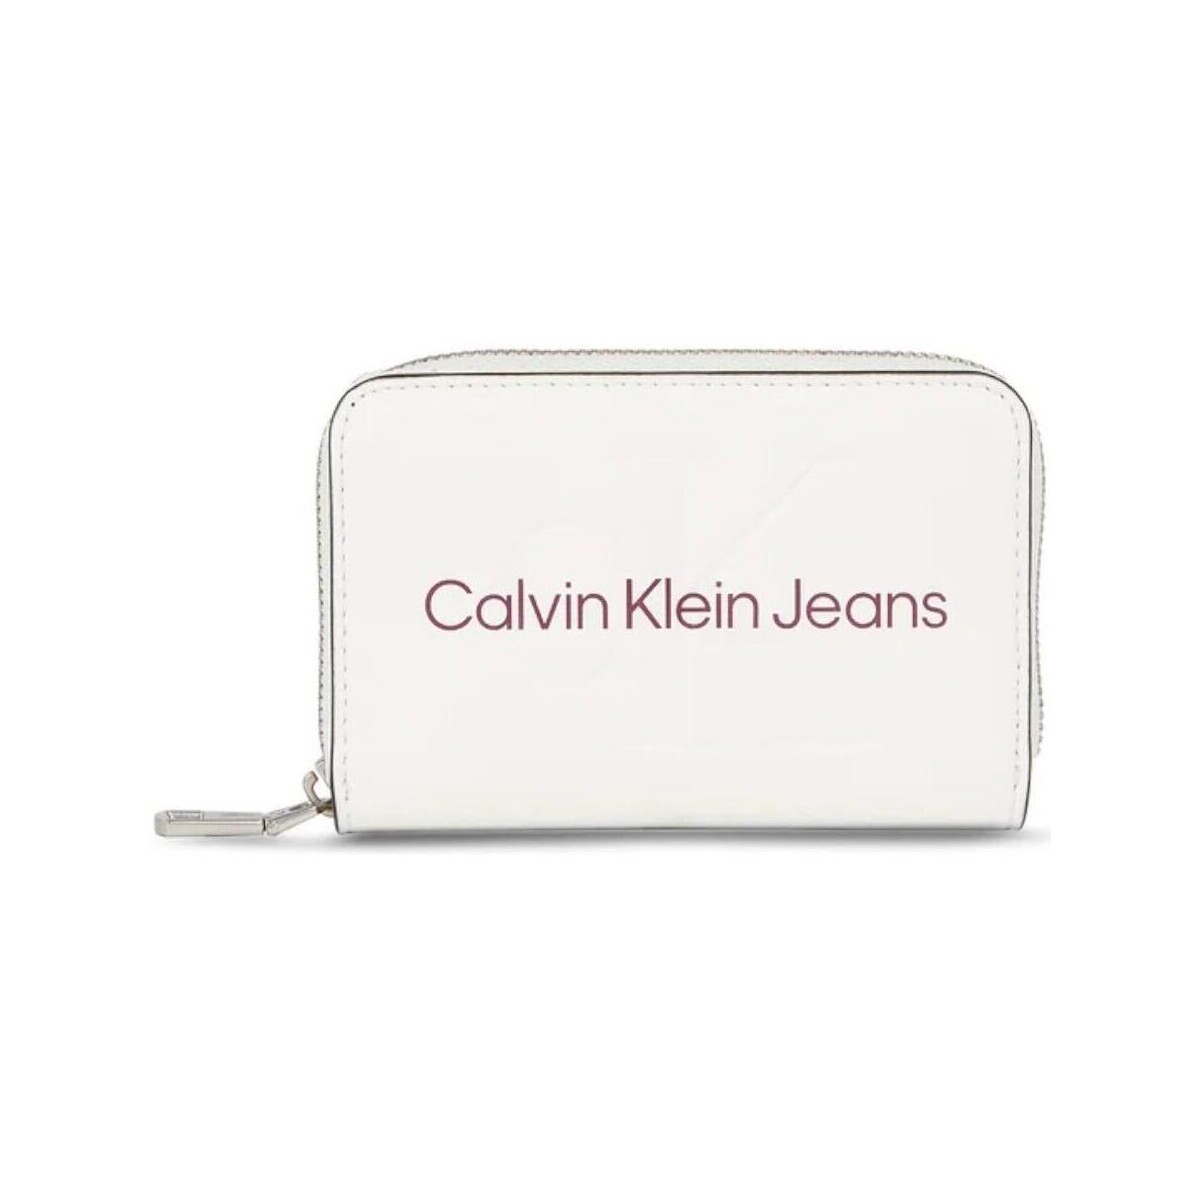 Tasker Dame Tasker Calvin Klein Jeans  Hvid